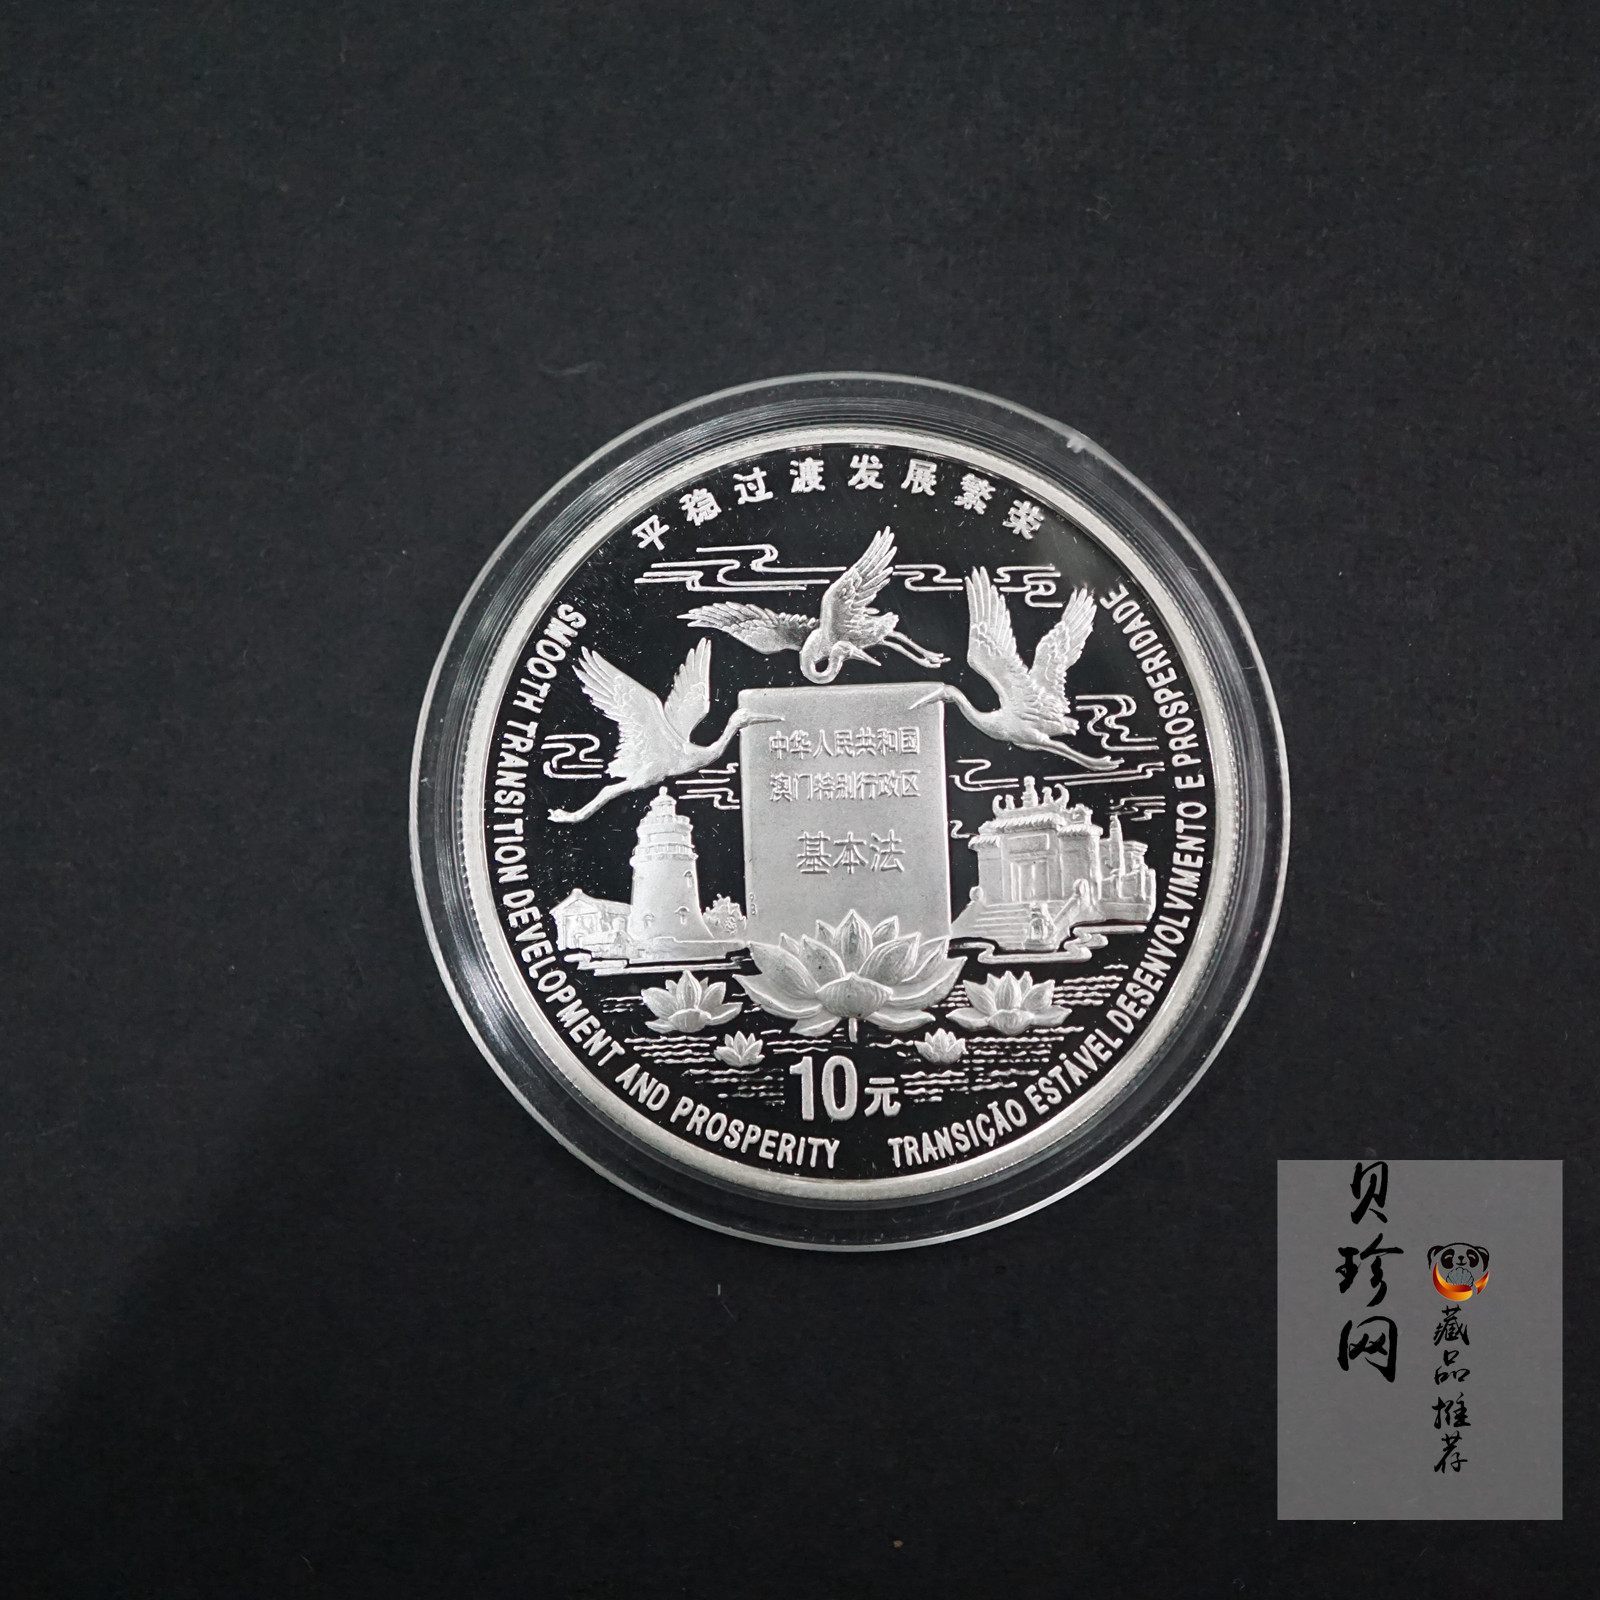 【980904】1998年澳门回归祖国金银纪念币（第2组）-基本法1盎司精制银币